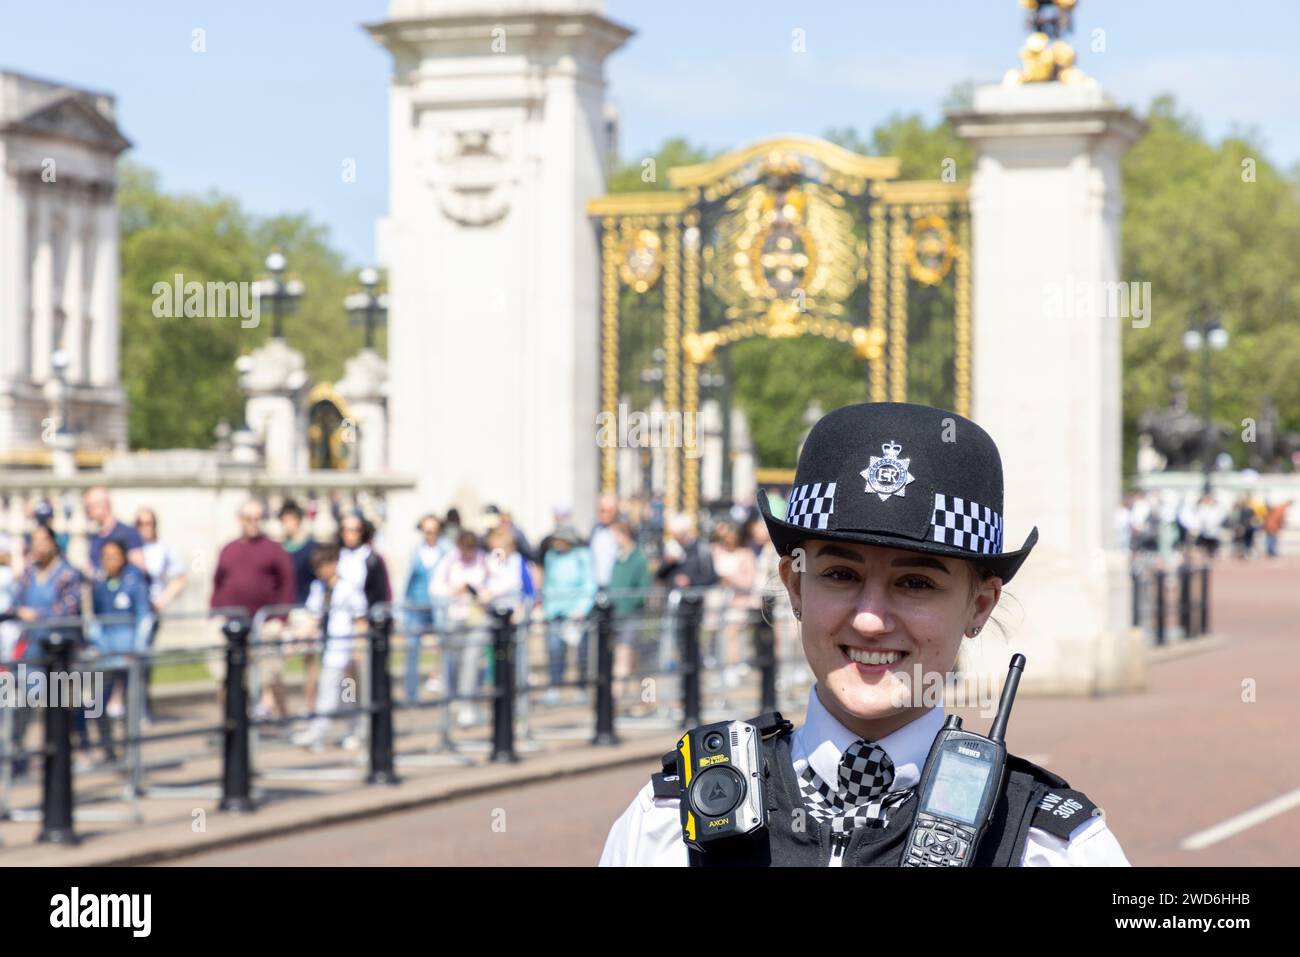 Une femme souriante officier de police devant Buckingham Palace, Londres Banque D'Images